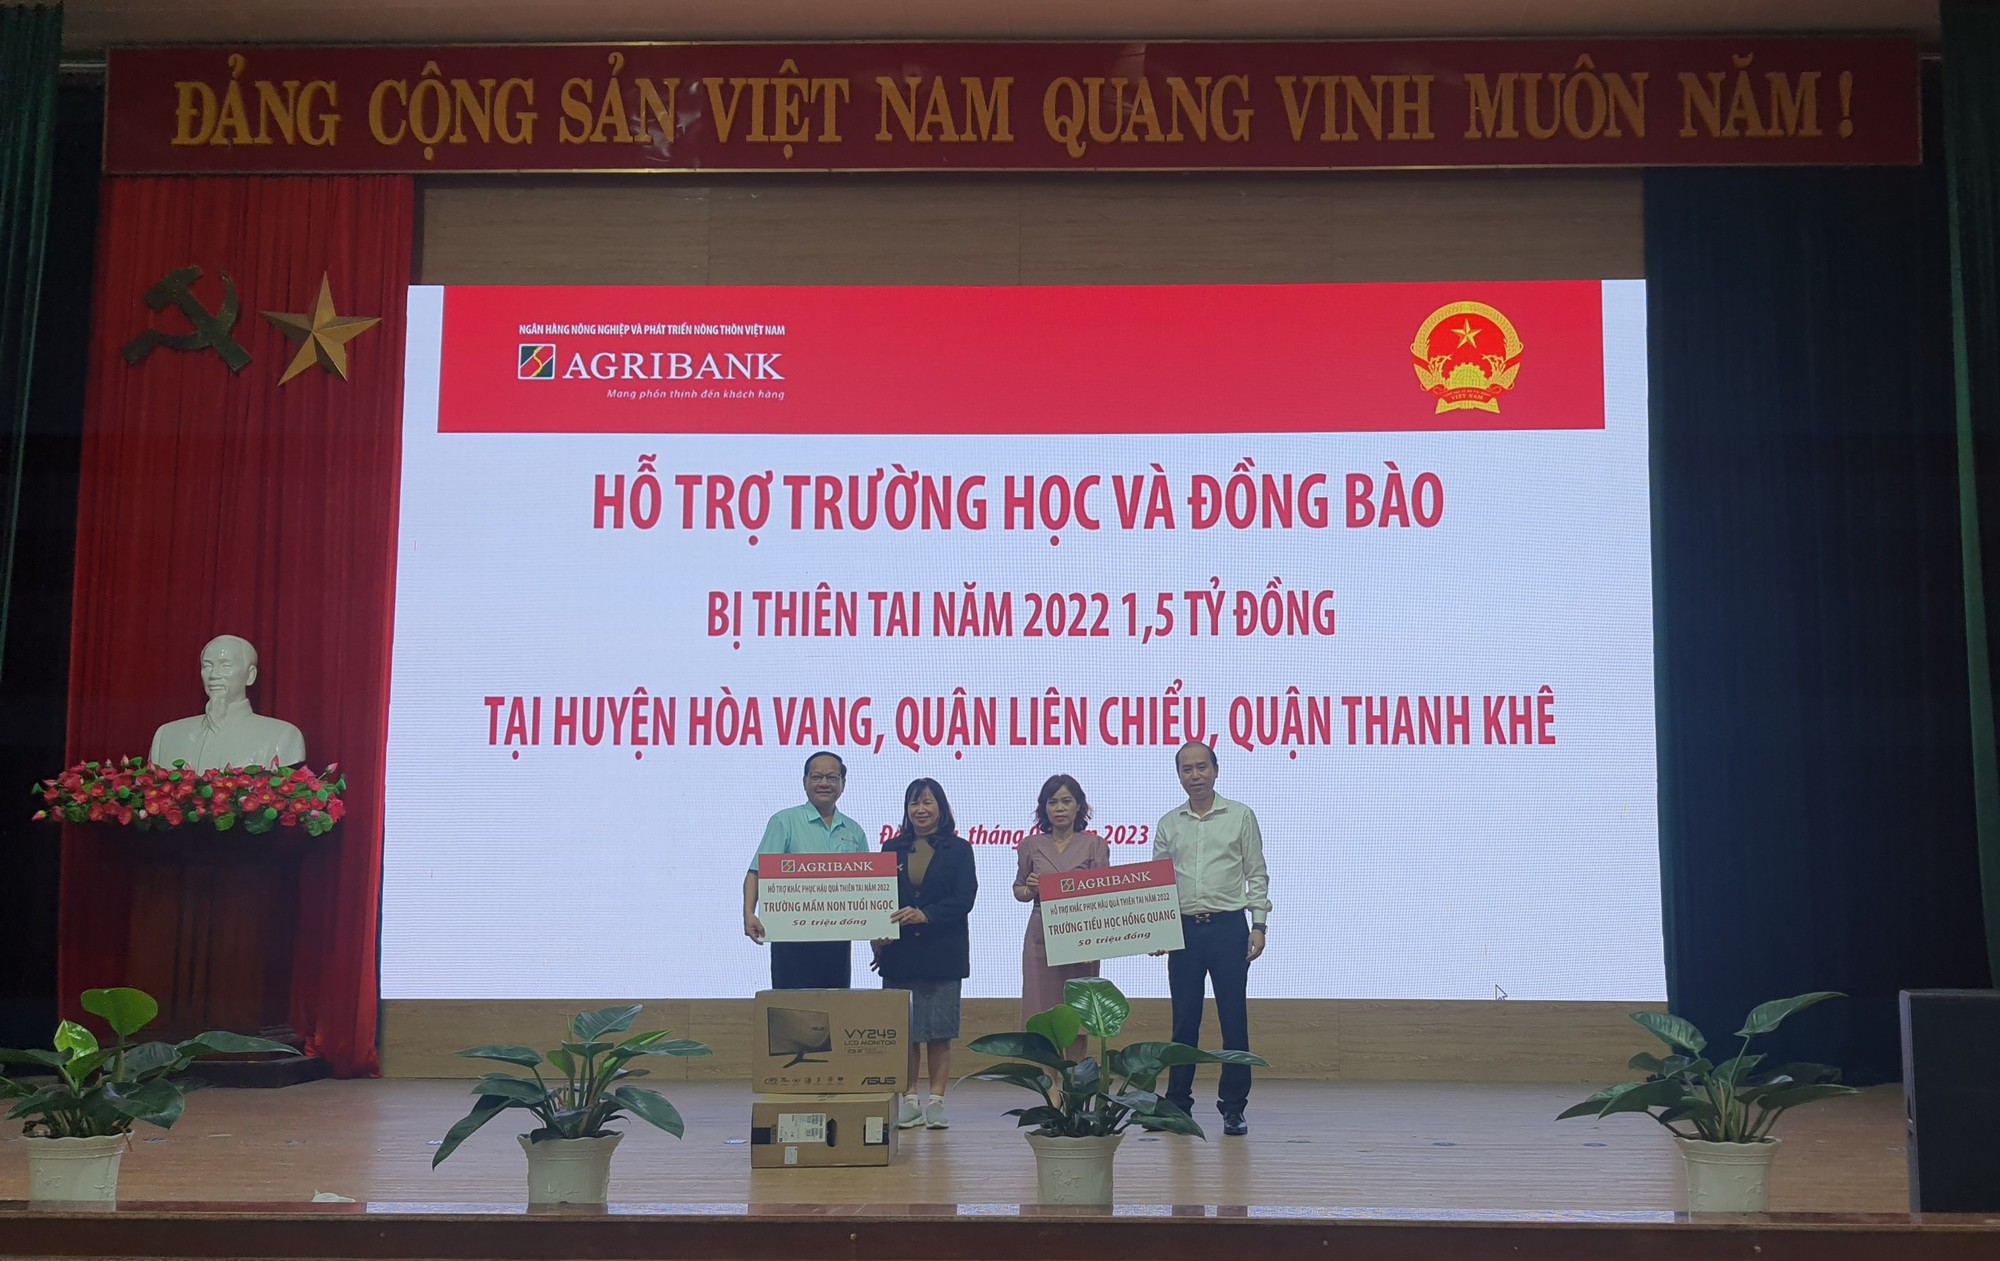 Đà Nẵng: Agribank miền Trung mang hàng nghìn suất quà yêu thương đến với người nghèo - Ảnh 6.